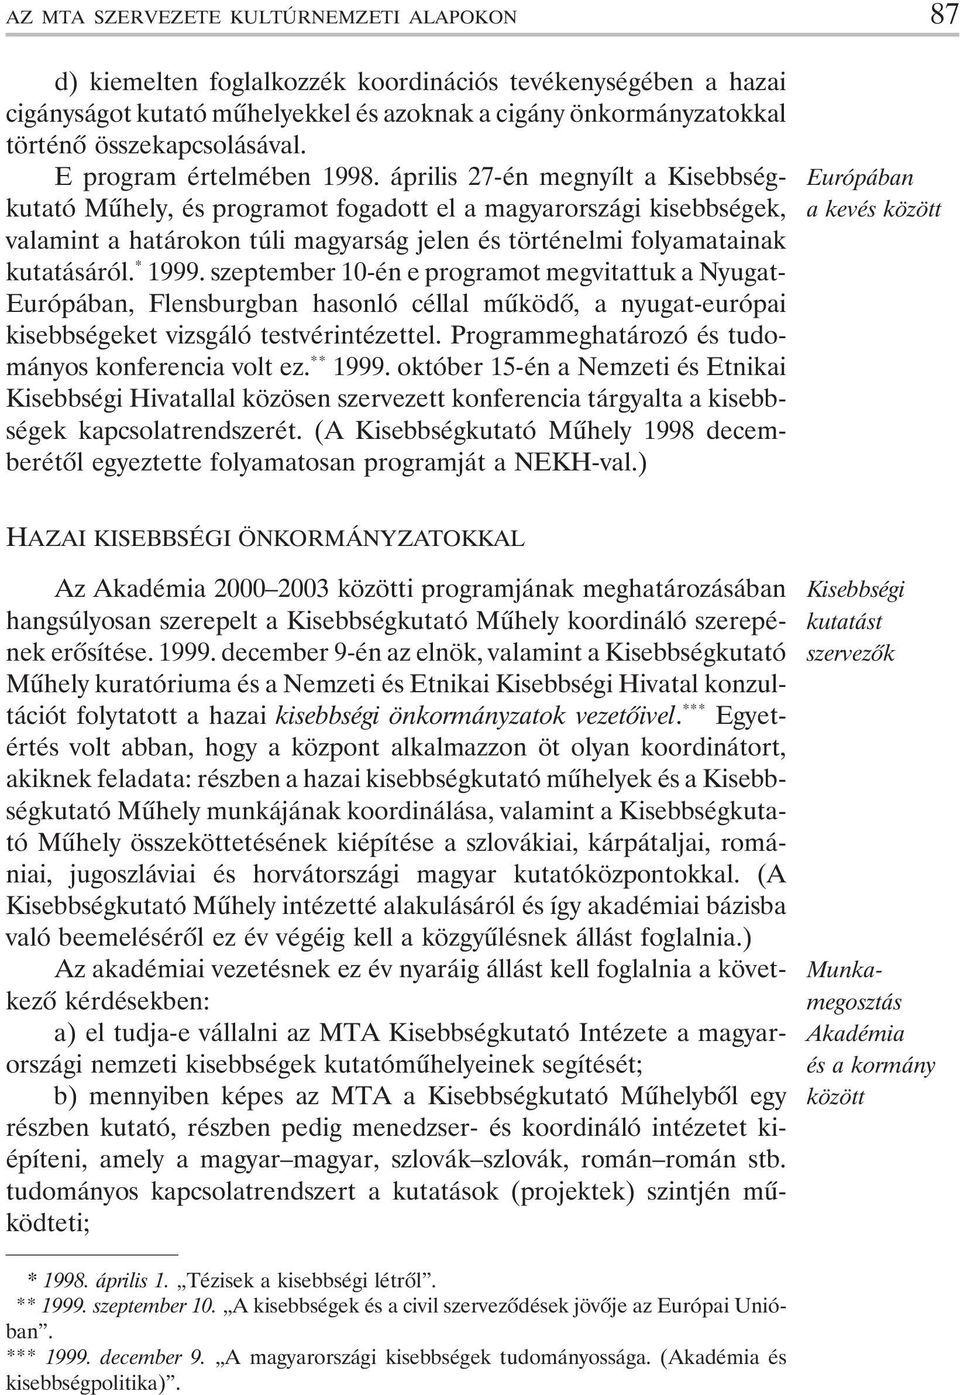 április 27-én megnyílt a Kisebbségkutató Mûhely, és programot fogadott el a magyarországi kisebbségek, valamint a határokon túli magyarság jelen és történelmi folyamatainak kutatásáról. * 1999.